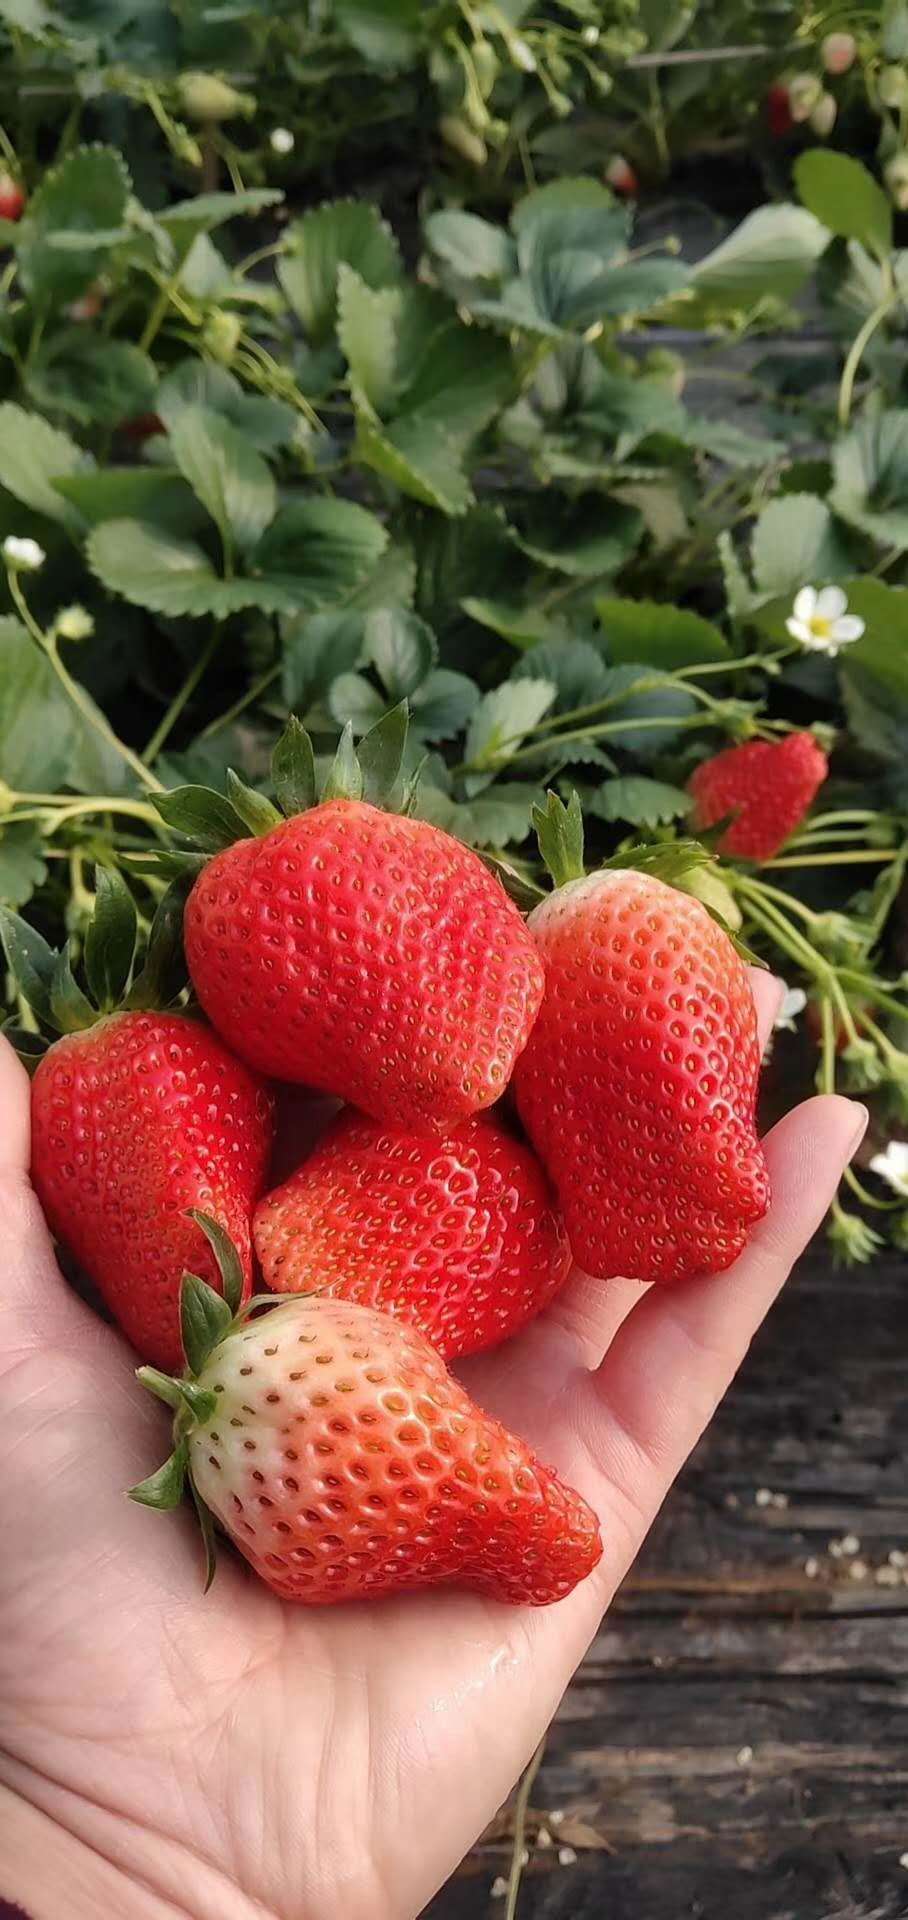 河南白雪公主草莓草莓苗出售脱毒草莓苗